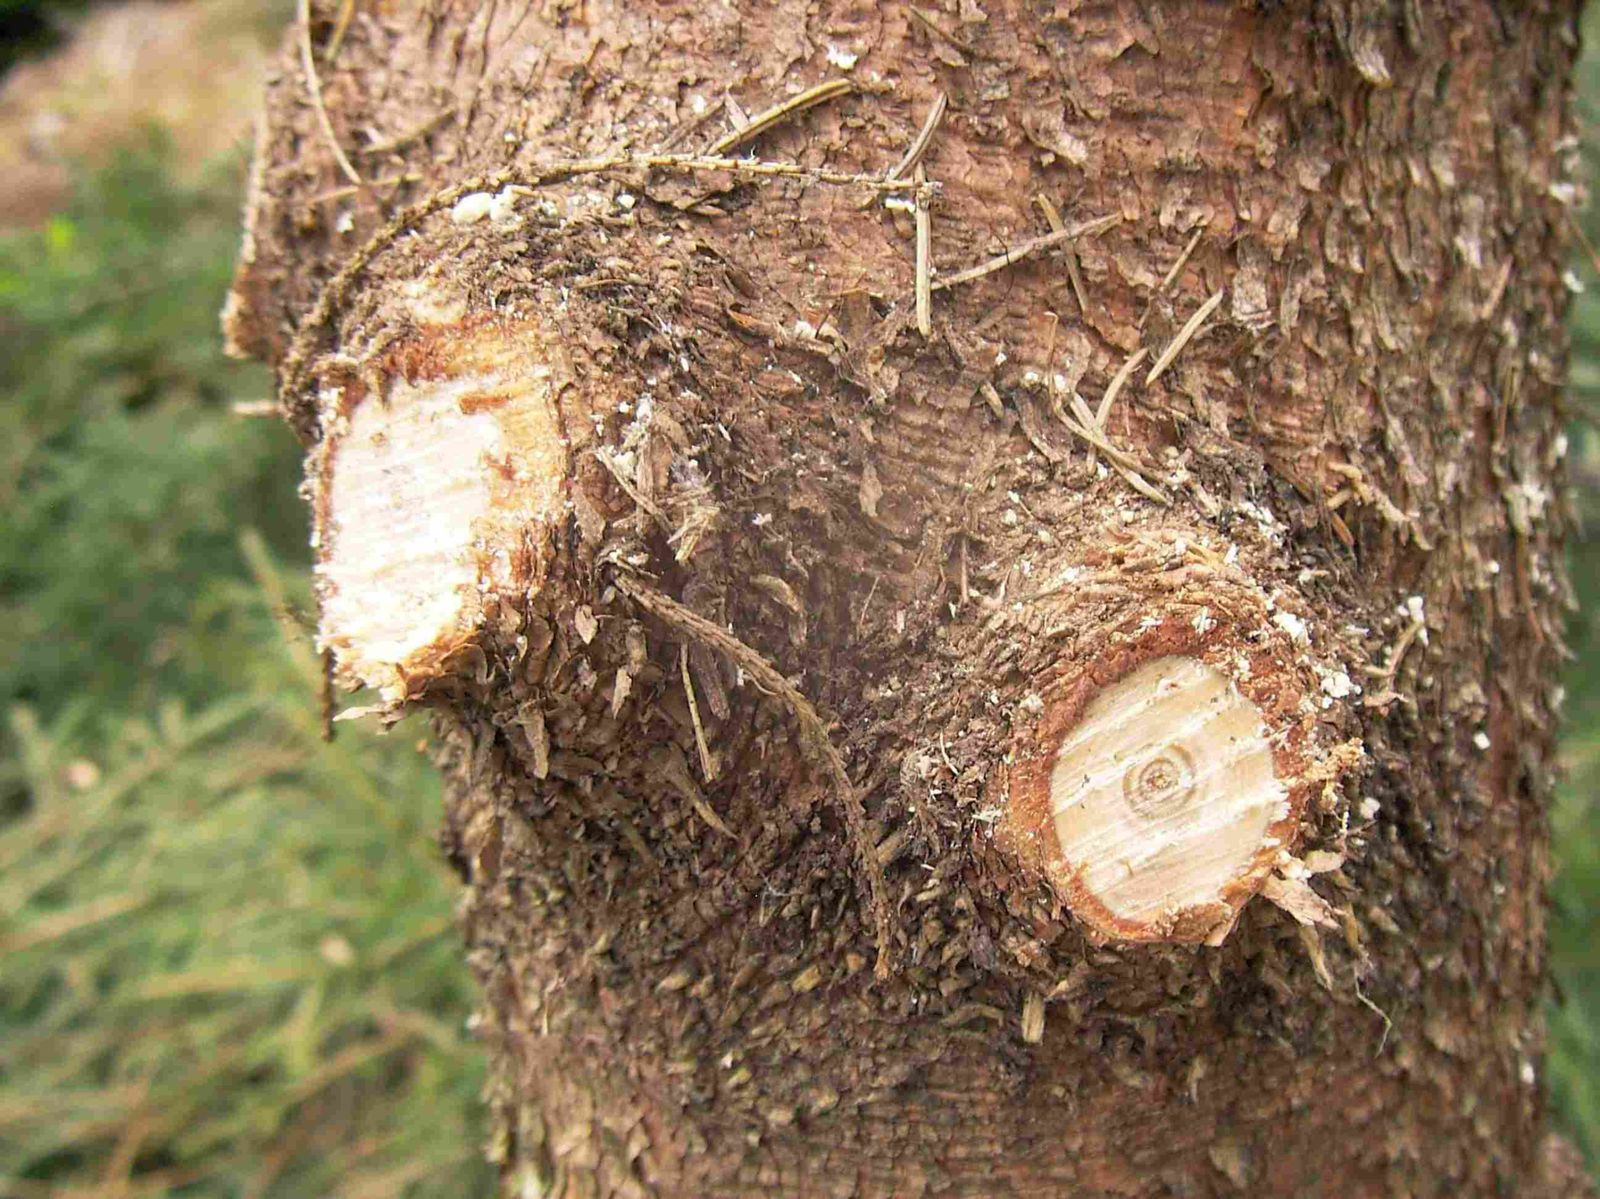 La quantité de bois disponible en forêt ne cesse d'augmenter. Après les tempêtes de 1999, seuls les bois de qualité ont pu être vendus. Les bois médiocres sont le plus souvent restés sur place.

Même en dehors de toute catastrophe, les boi